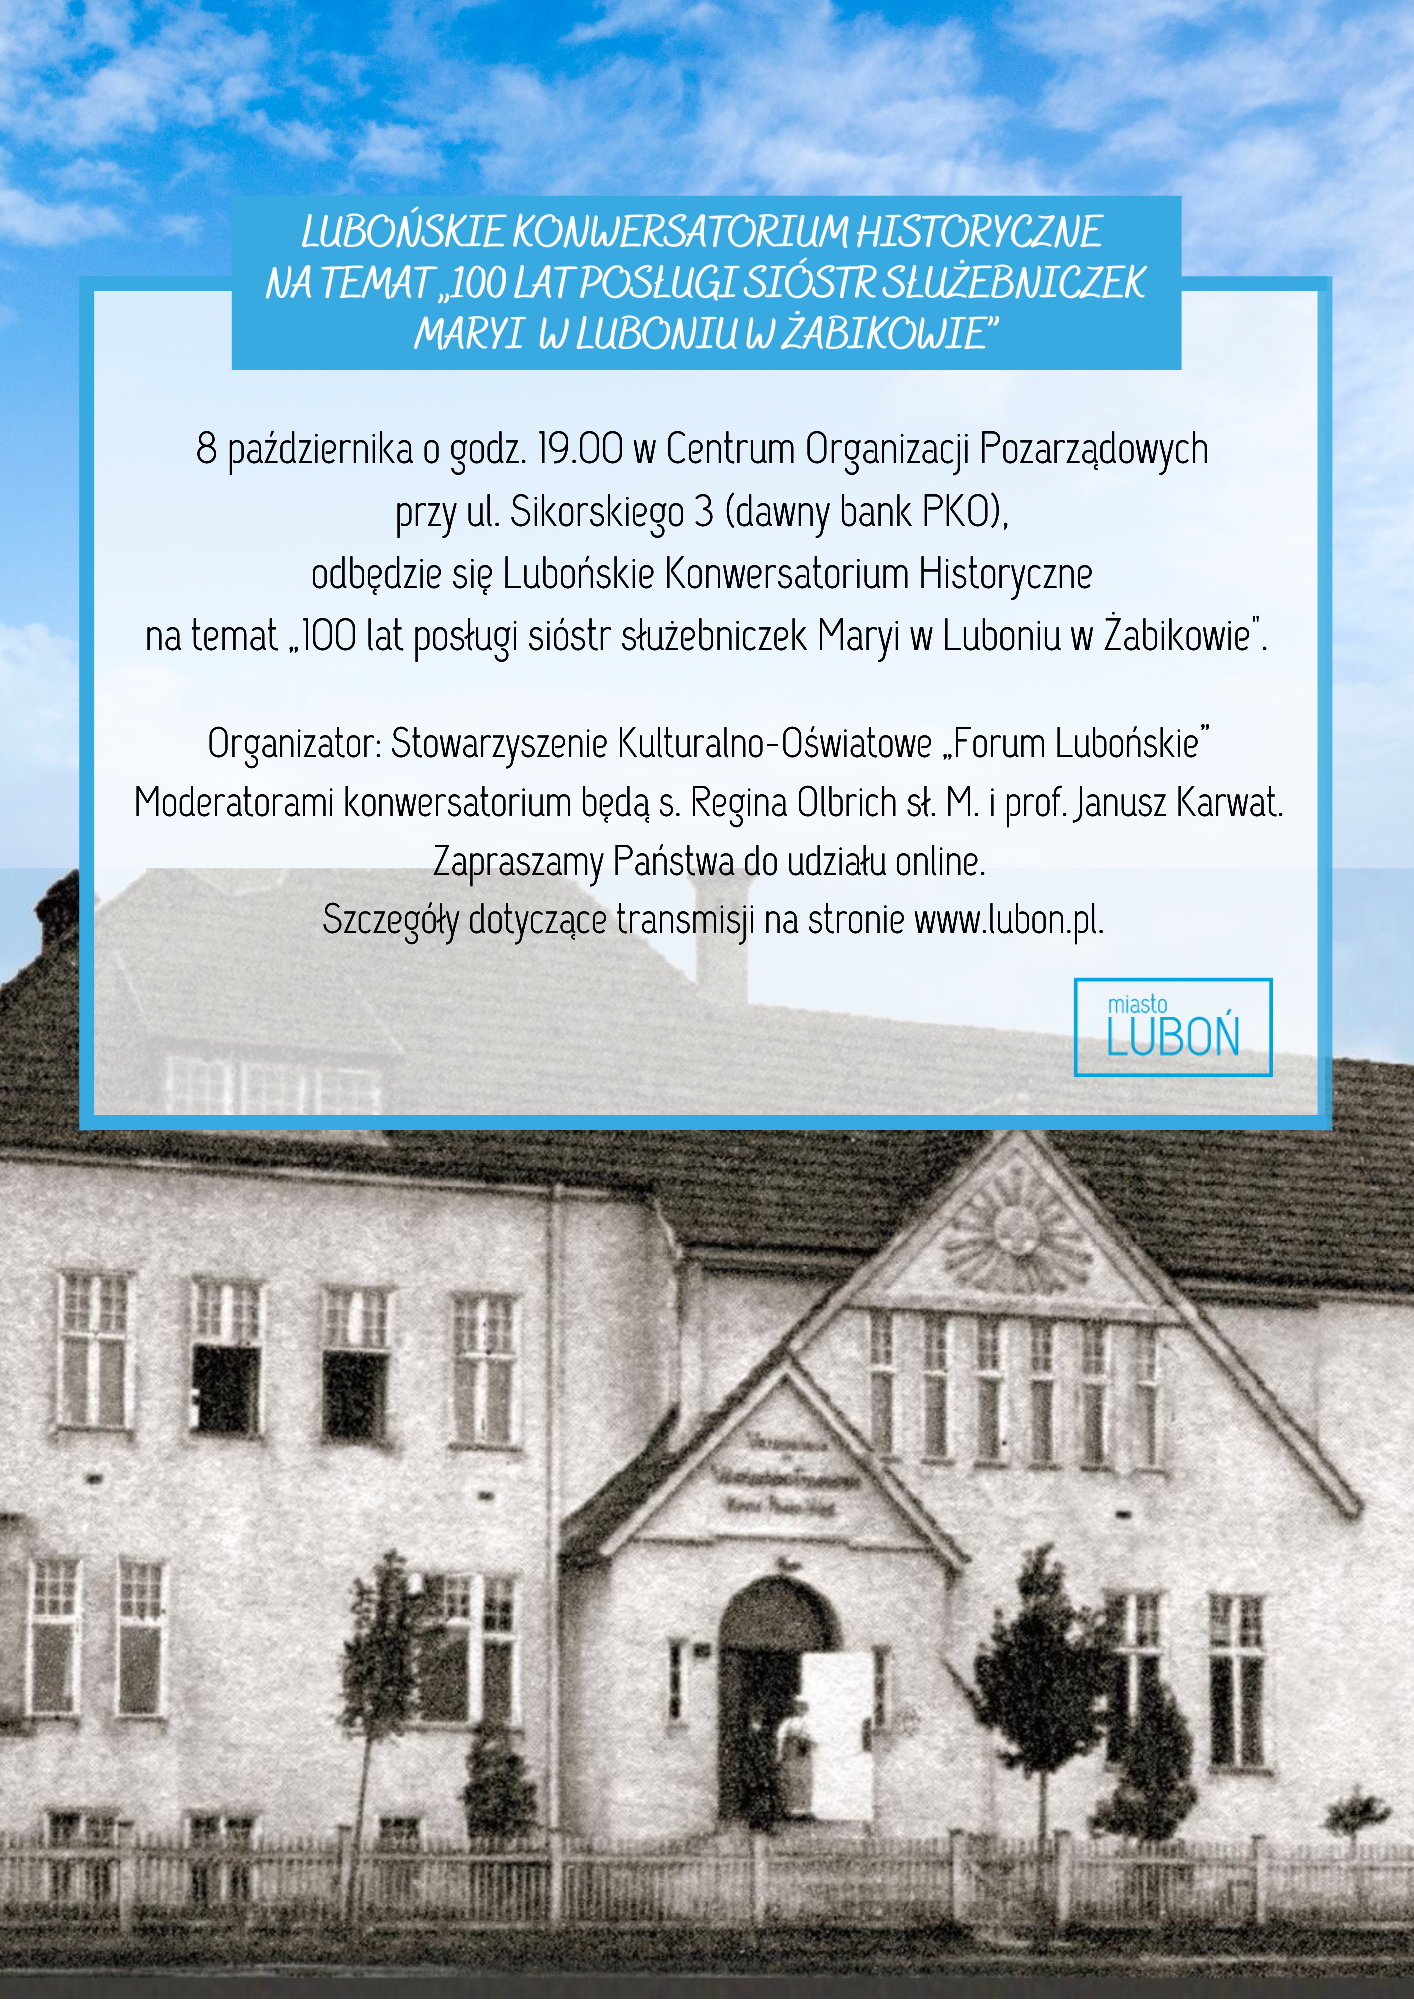 plakat promujący Lubońskie Konwersatorium Historyczne - informacje powtórzone w artykule